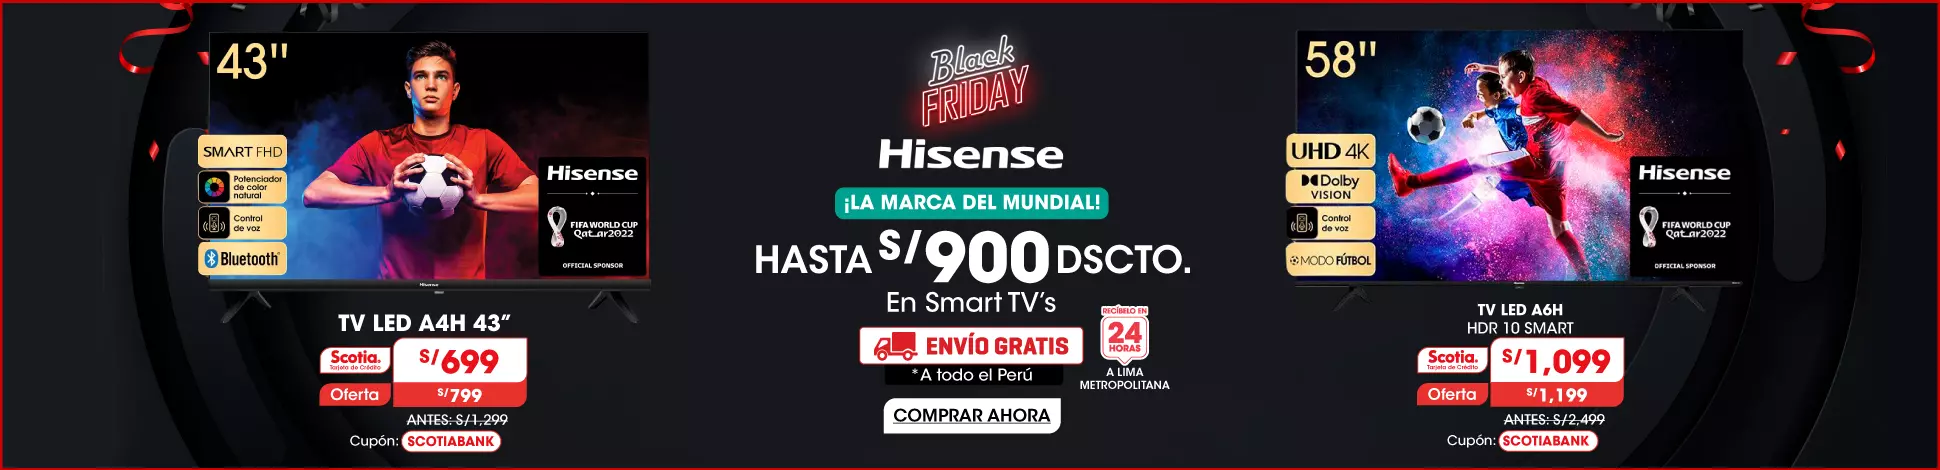 hs-hisense-final.webp | Juntoz.com